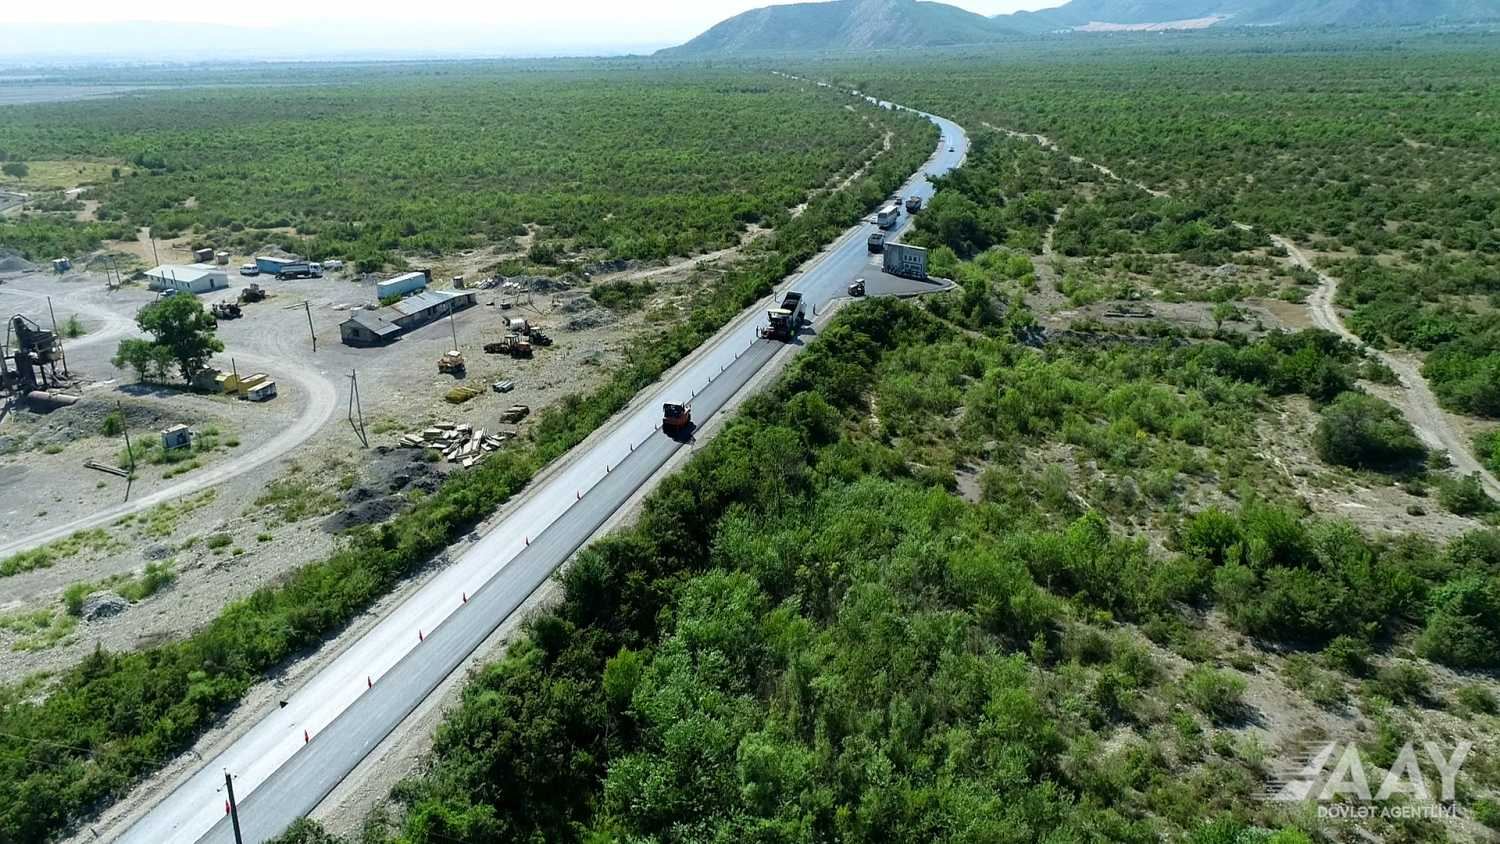 Oğuz-Şəki yolu yenidən qurulur (FOTO/VİDEO)